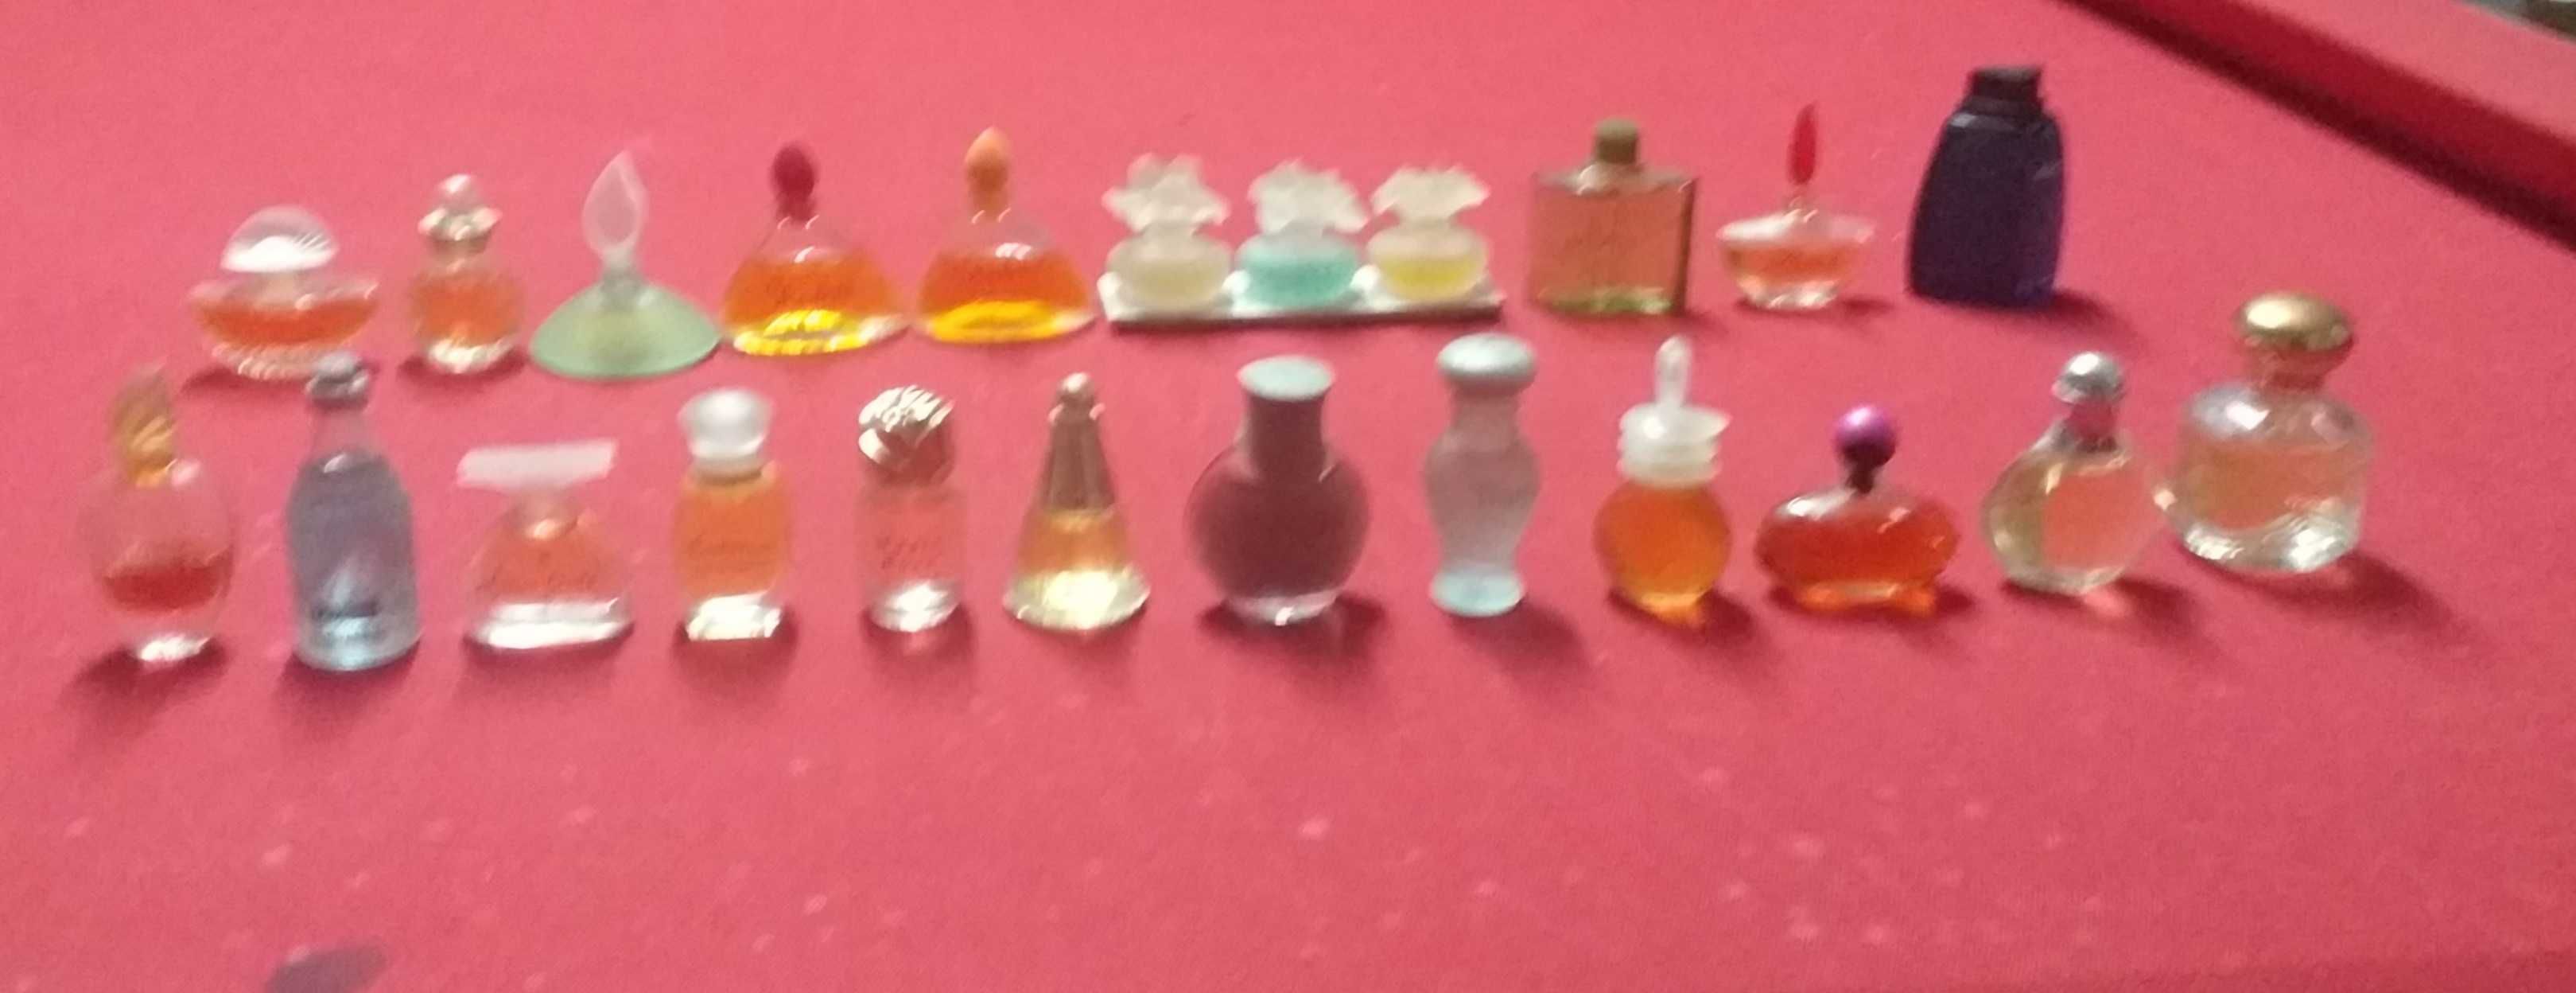 Miniaturas de perfume coleção